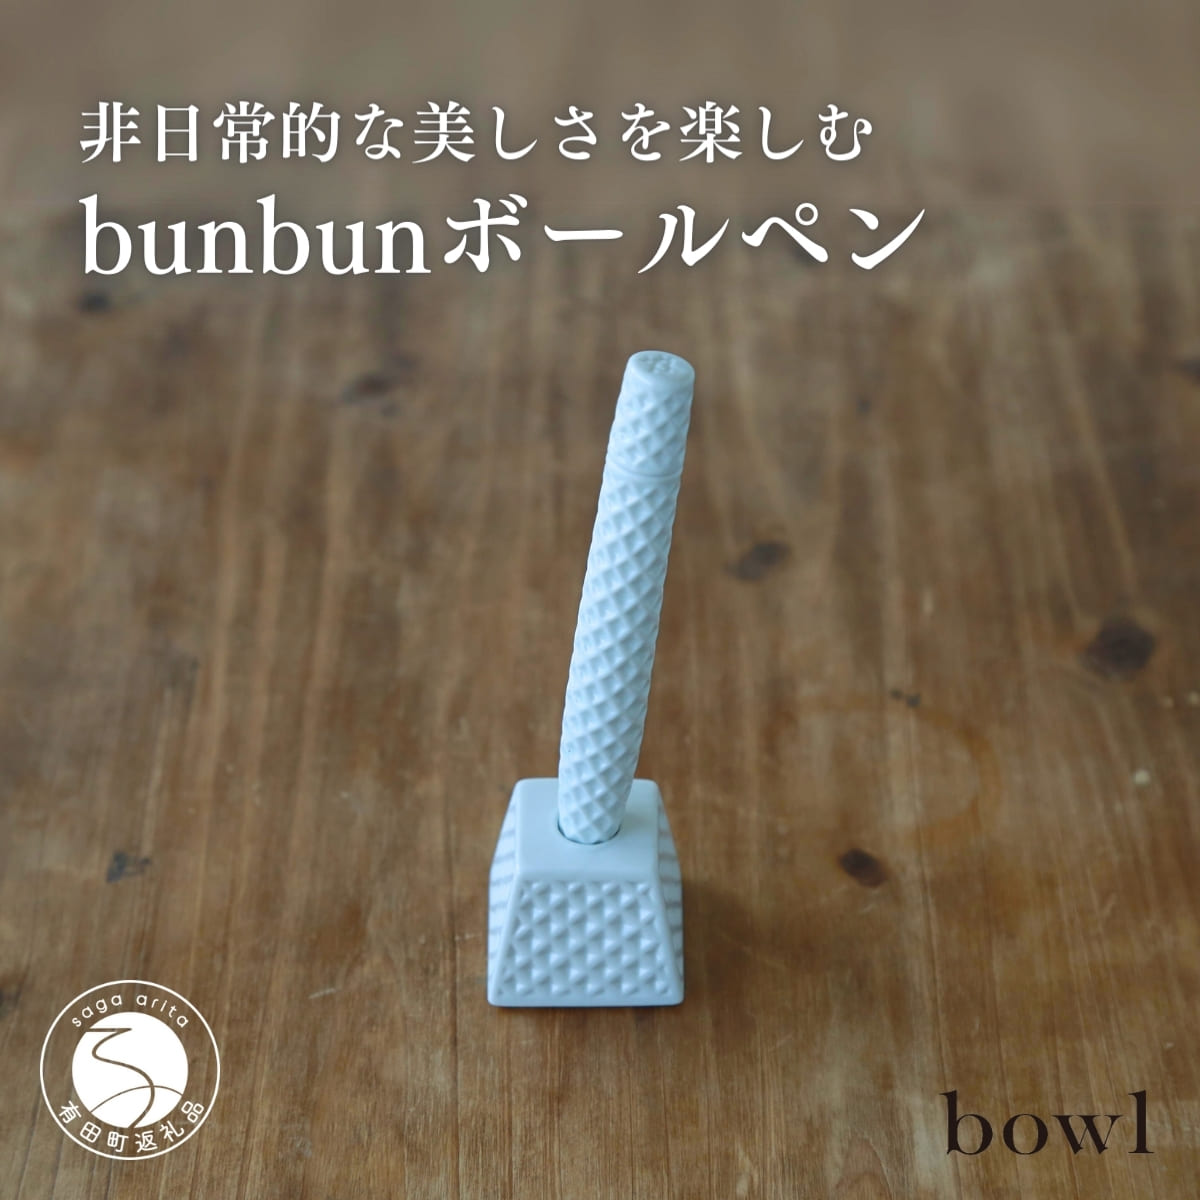 8位! 口コミ数「0件」評価「0」A55-33非日常的な美しさを楽しむ bunbun ボールペン 日用品店bowl